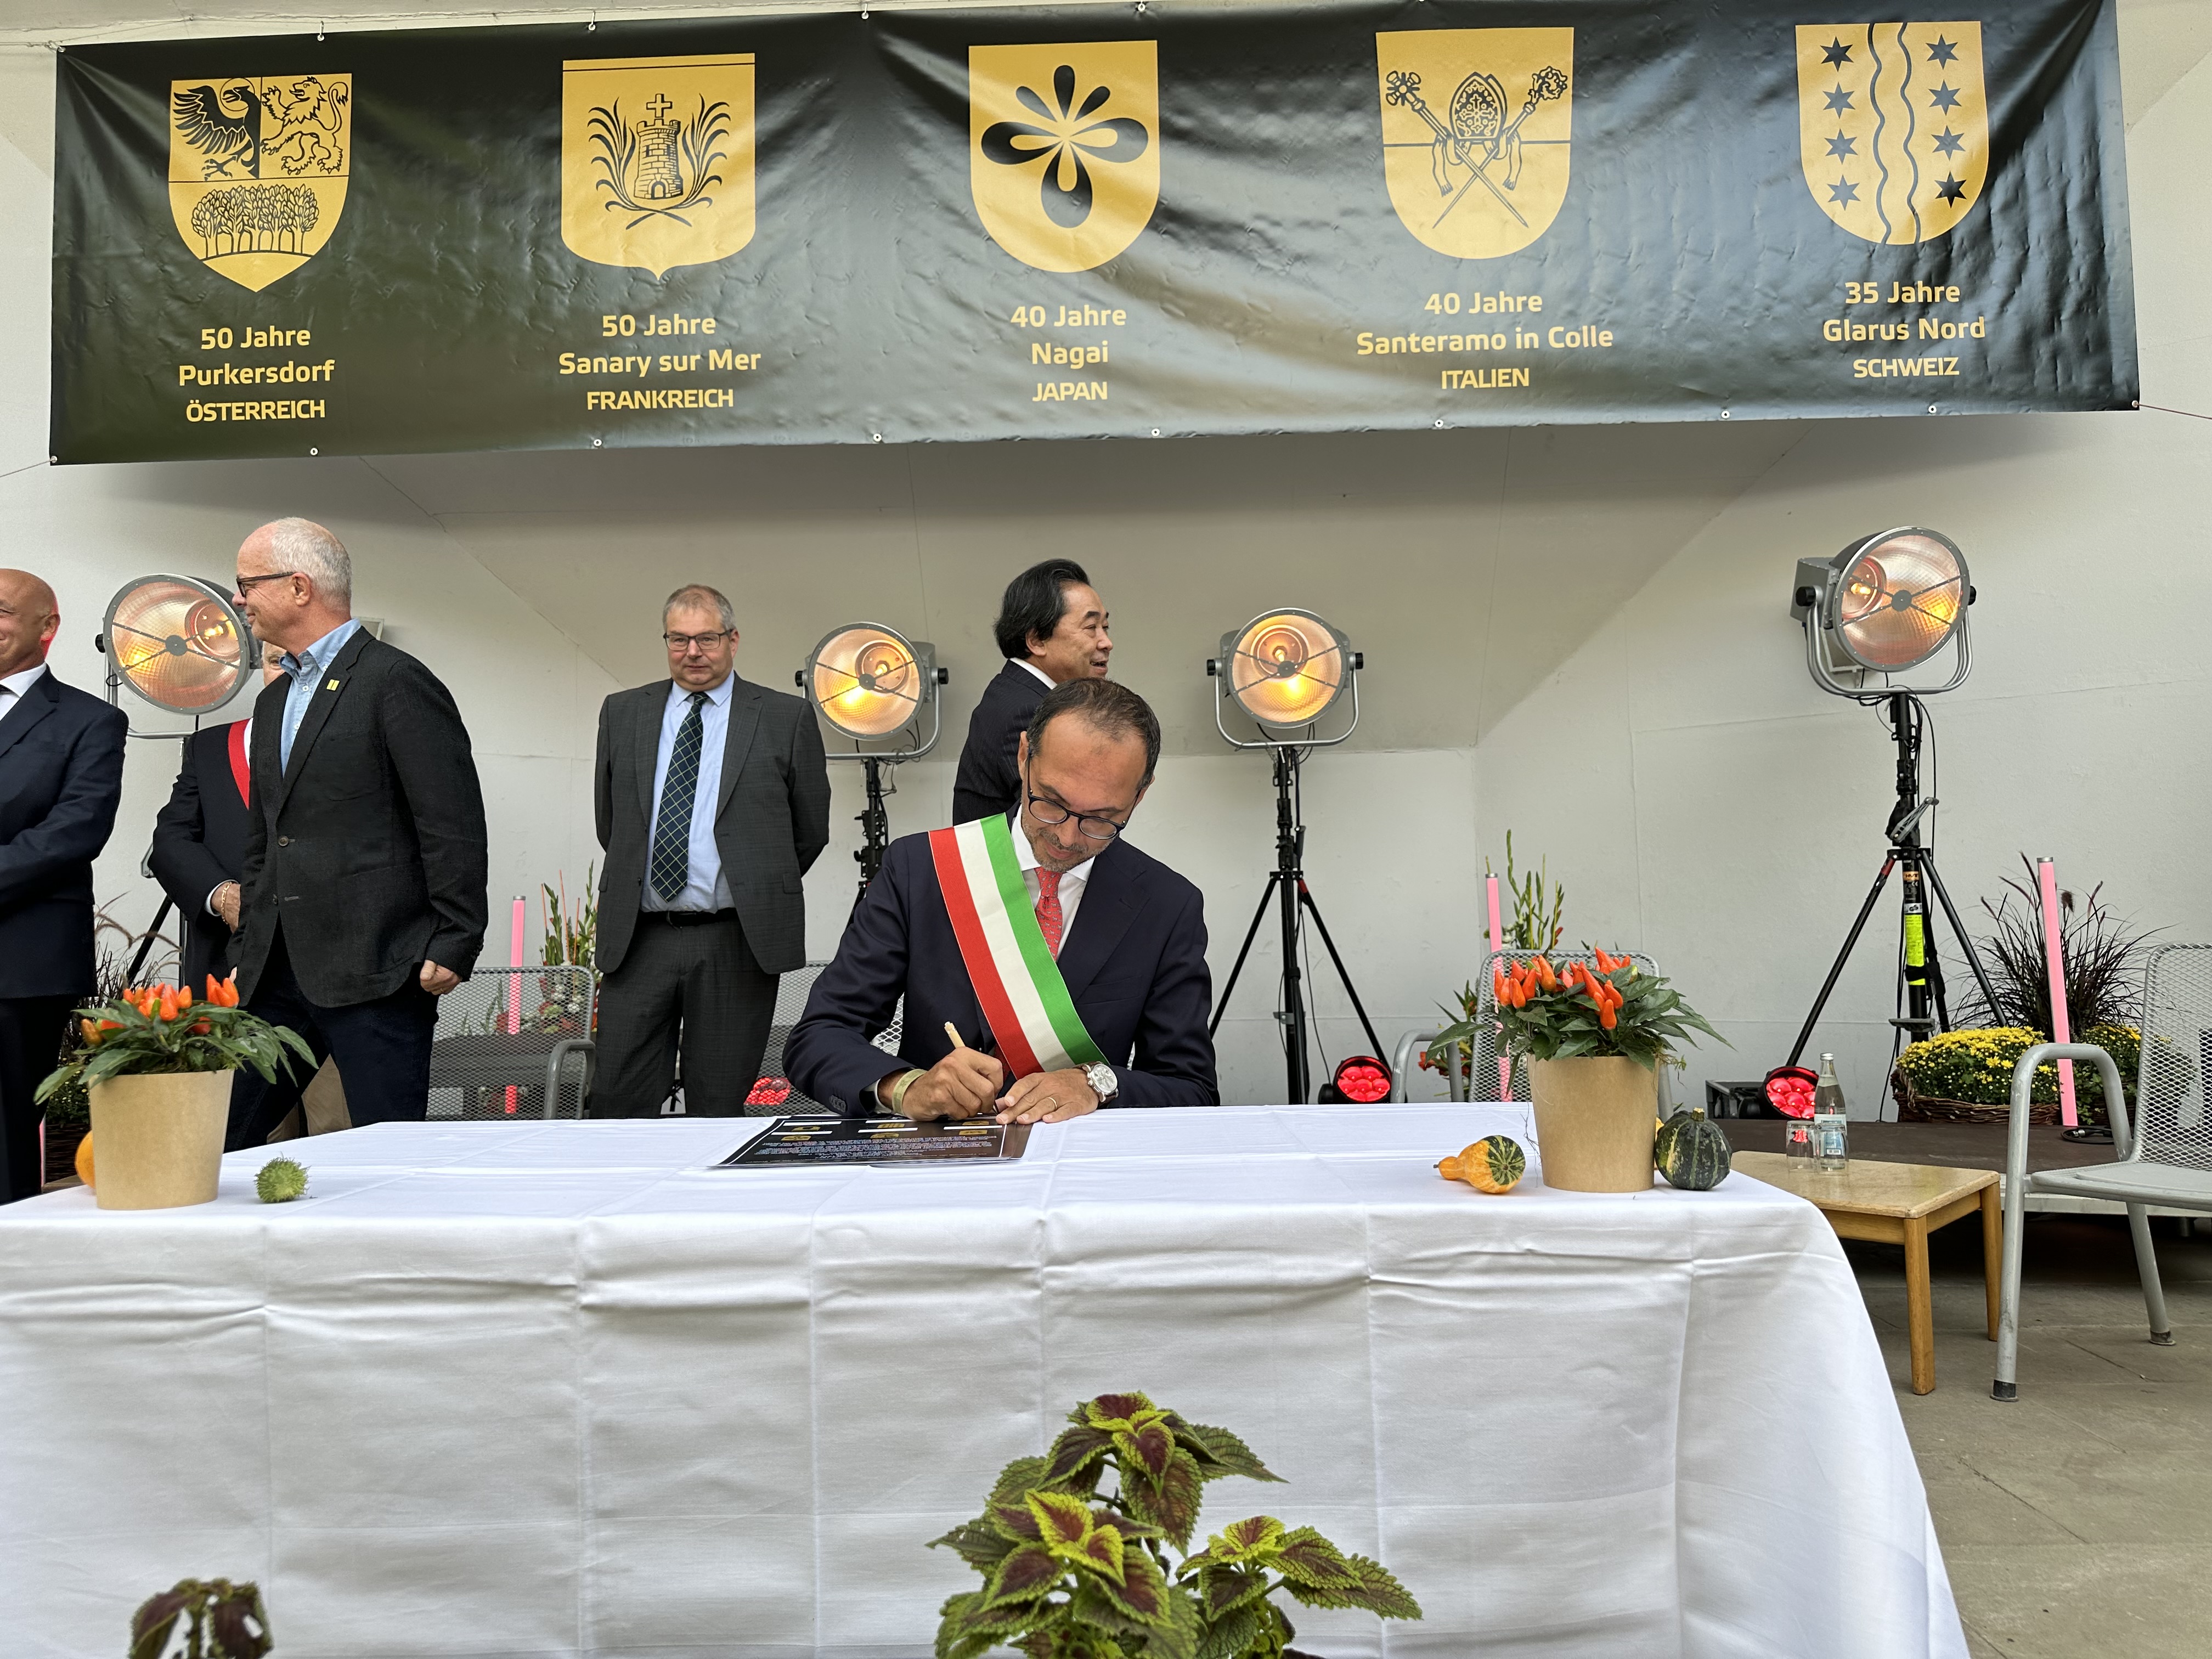  Bürgermeister Vincenzo Luciano Casone aus Santeramo (Italien) bei der Unterzeichnung 